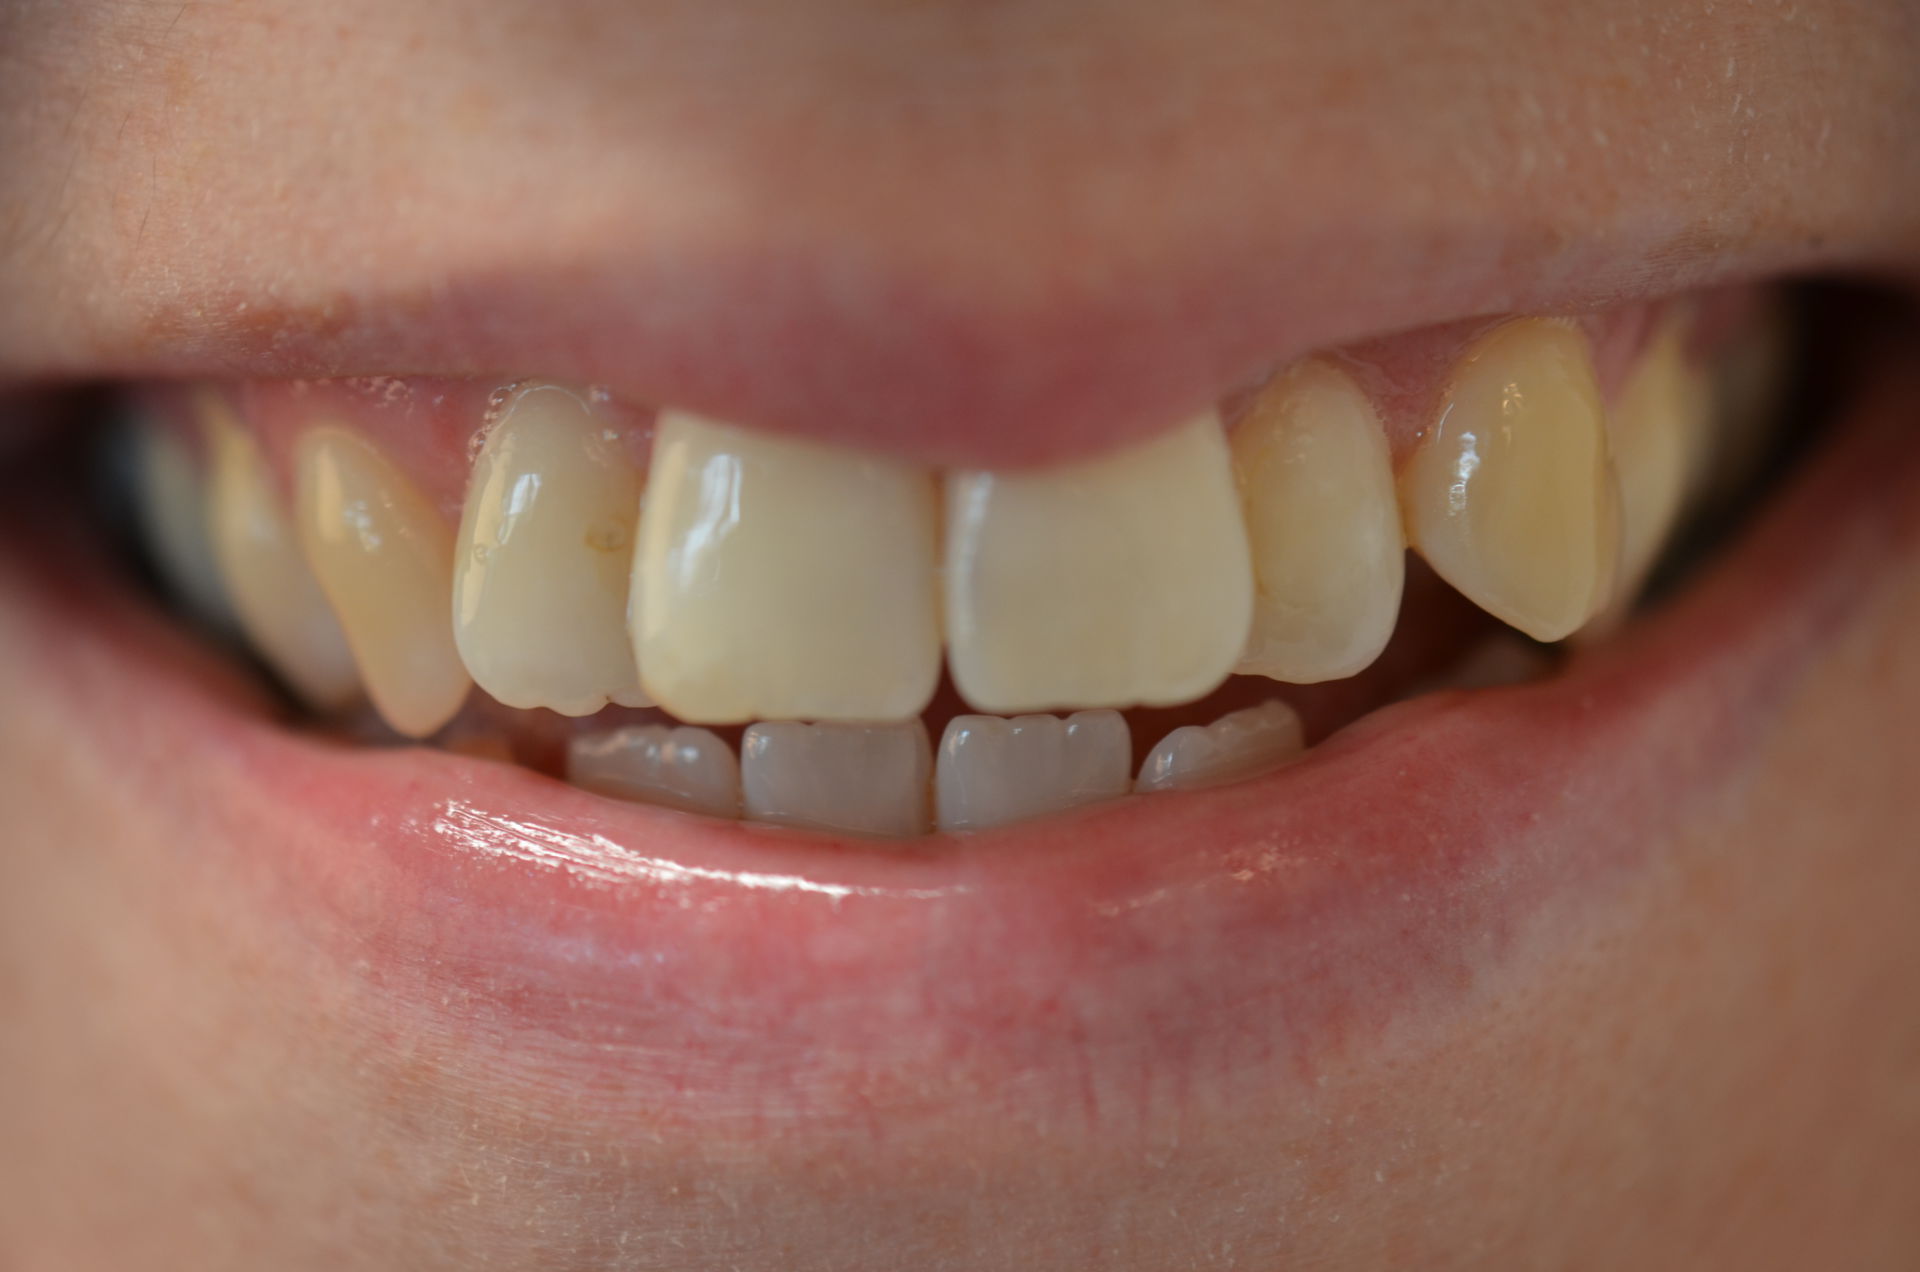 Rechte tanden zonder beugel? | GlamSmile